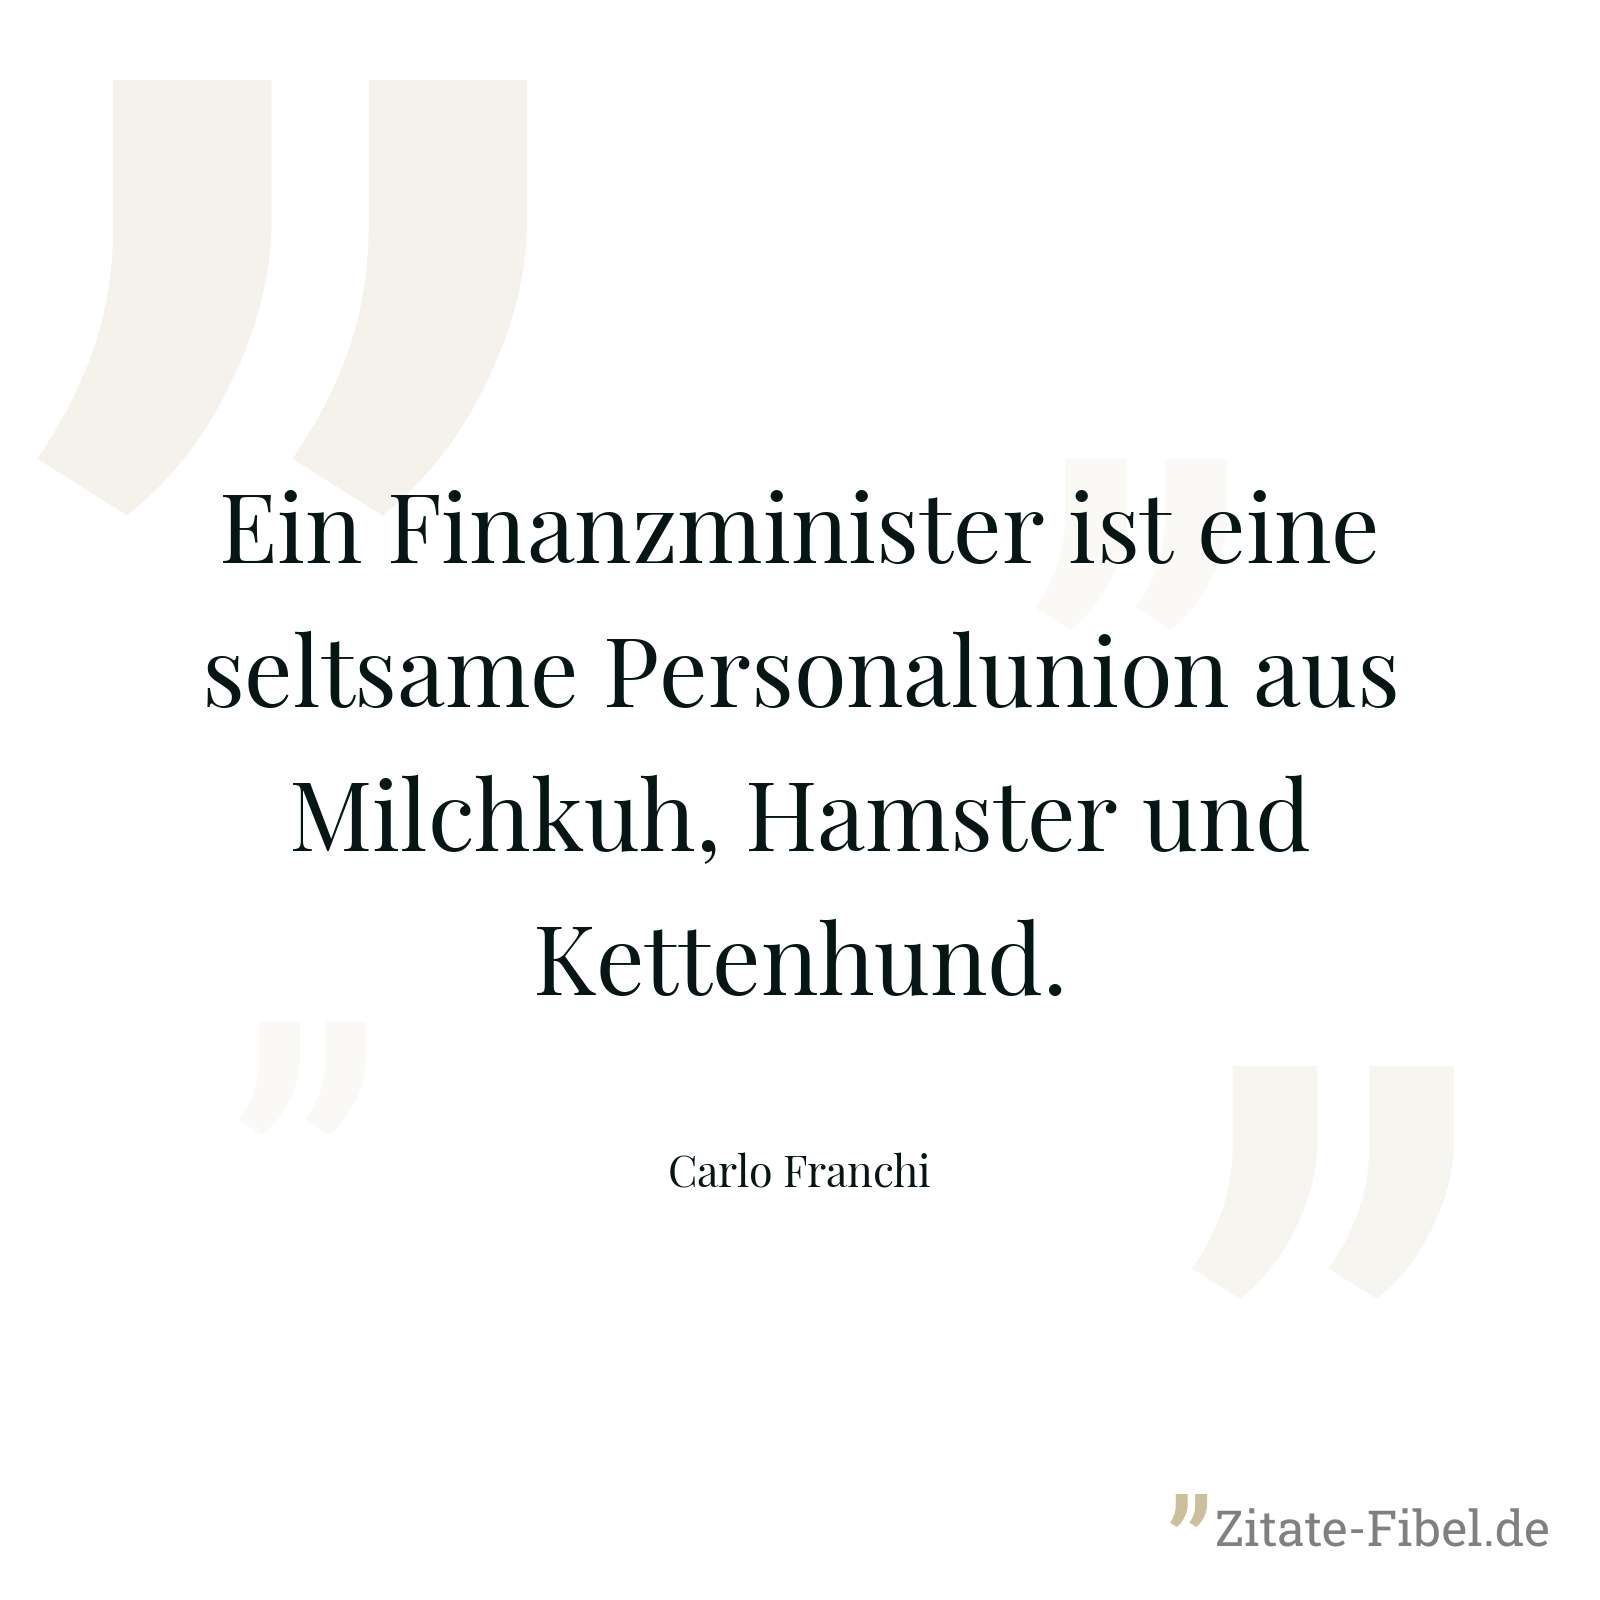 Ein Finanzminister ist eine seltsame Personalunion aus Milchkuh, Hamster und Kettenhund. - Carlo Franchi